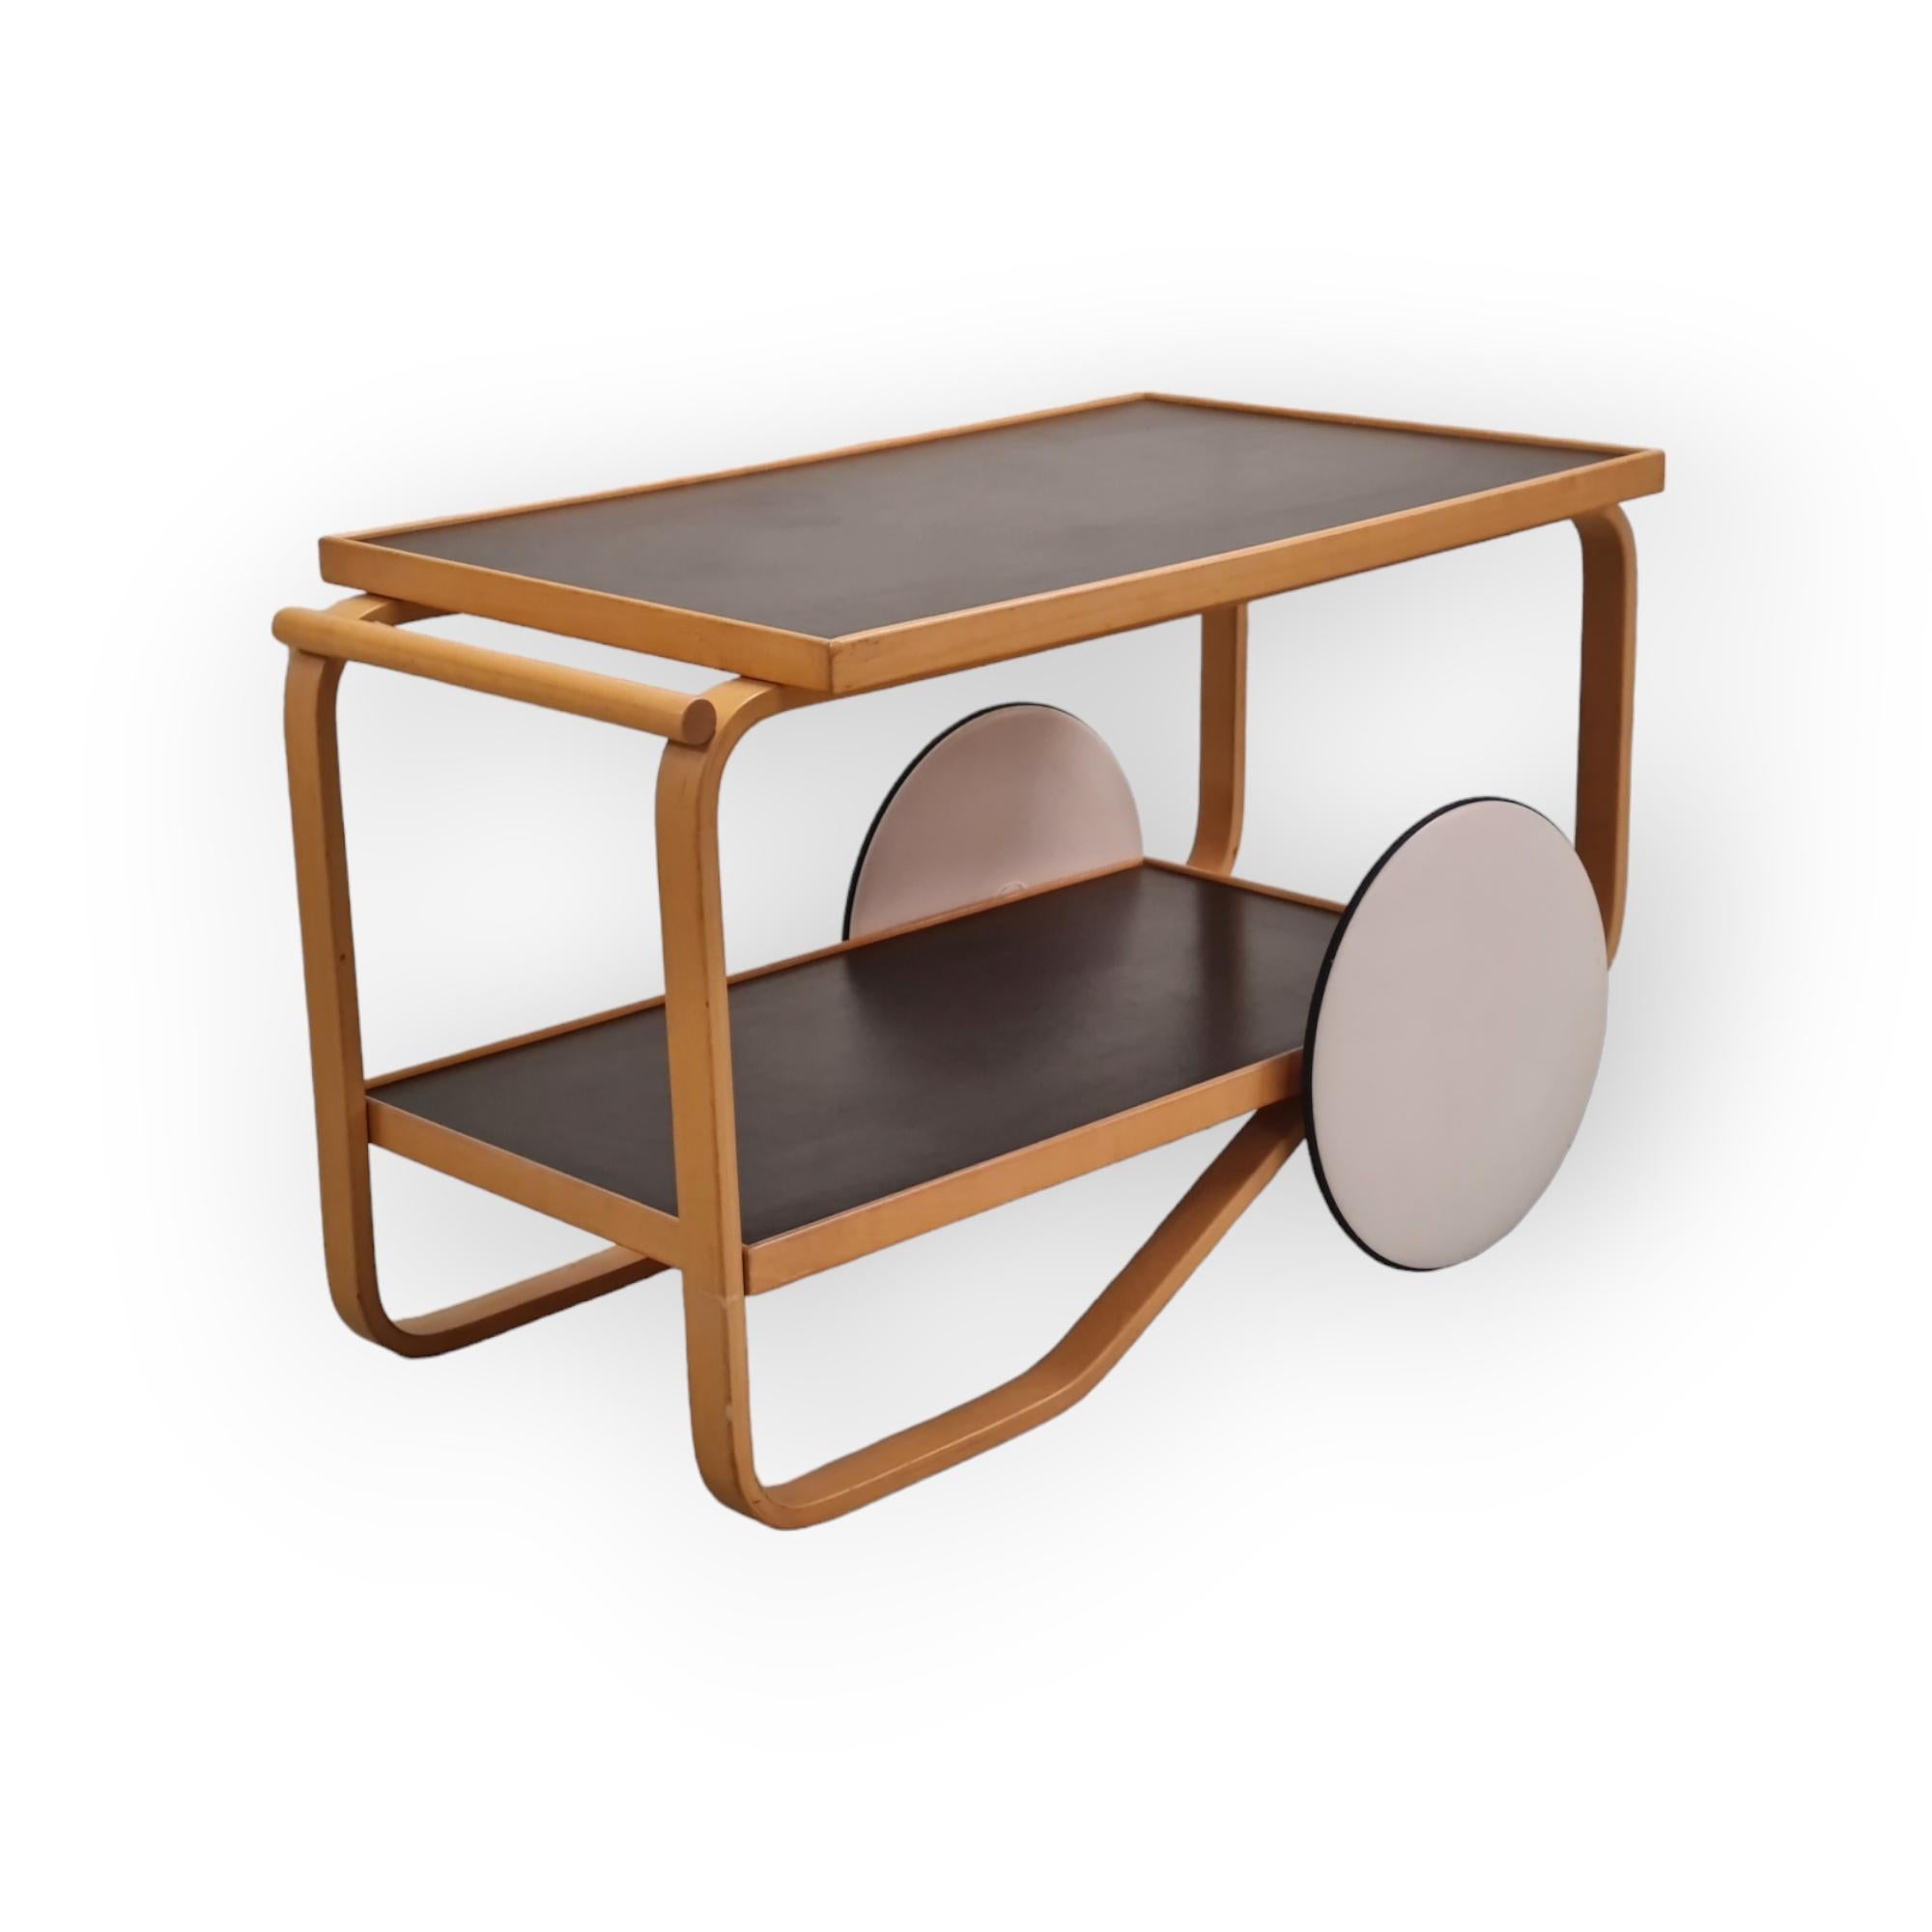 Alvar Aalto stellte dieses Wagenmodell erstmals in den 1930er Jahren vor. Es ist eine der einfachsten seiner Karrenserien. Inspirationen durch die britische Teekultur und japanische Holzarbeiten sind in diesem Stück offensichtlich.
Dieser schlichte,